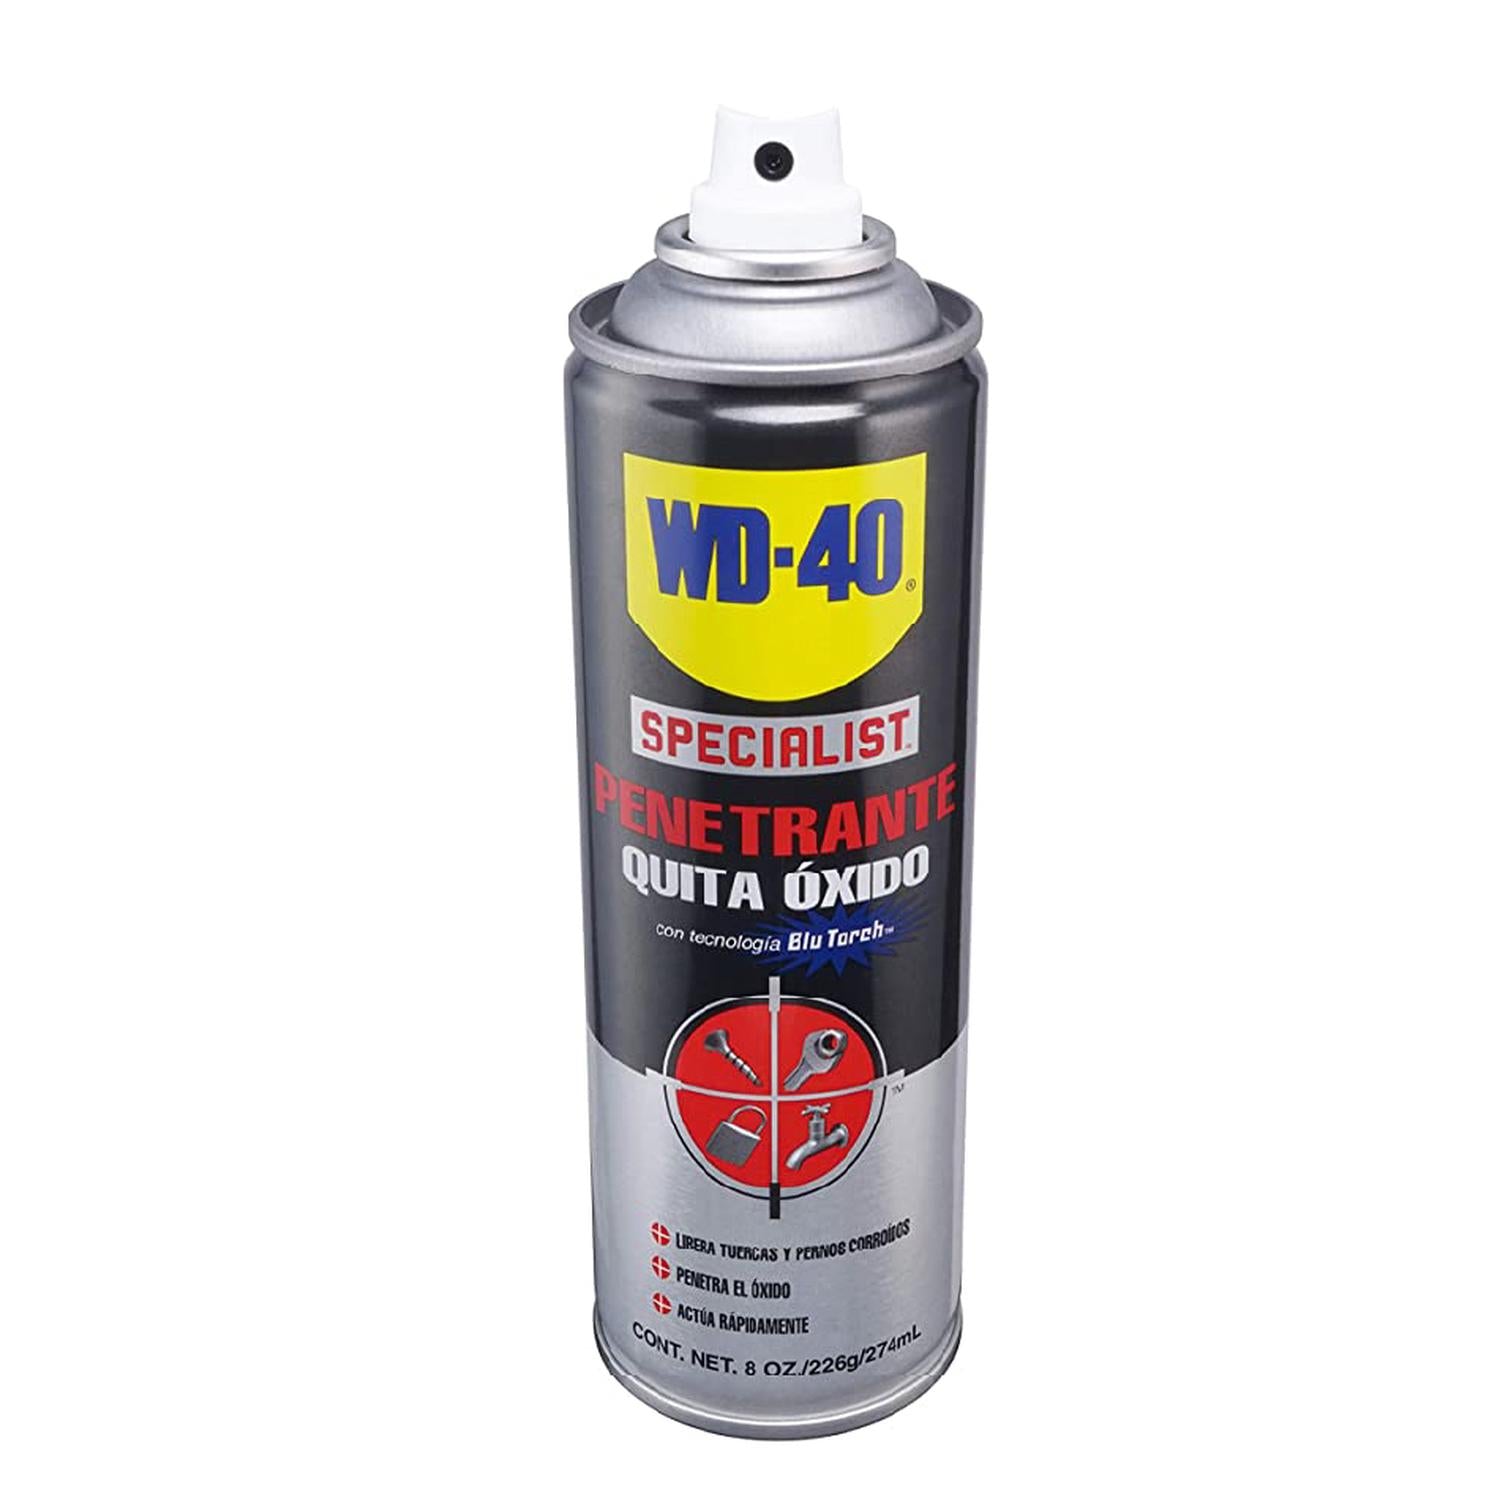 WD-40 Specialist Removedor de óxido 250ml - mejores precios ▷ FC-Moto